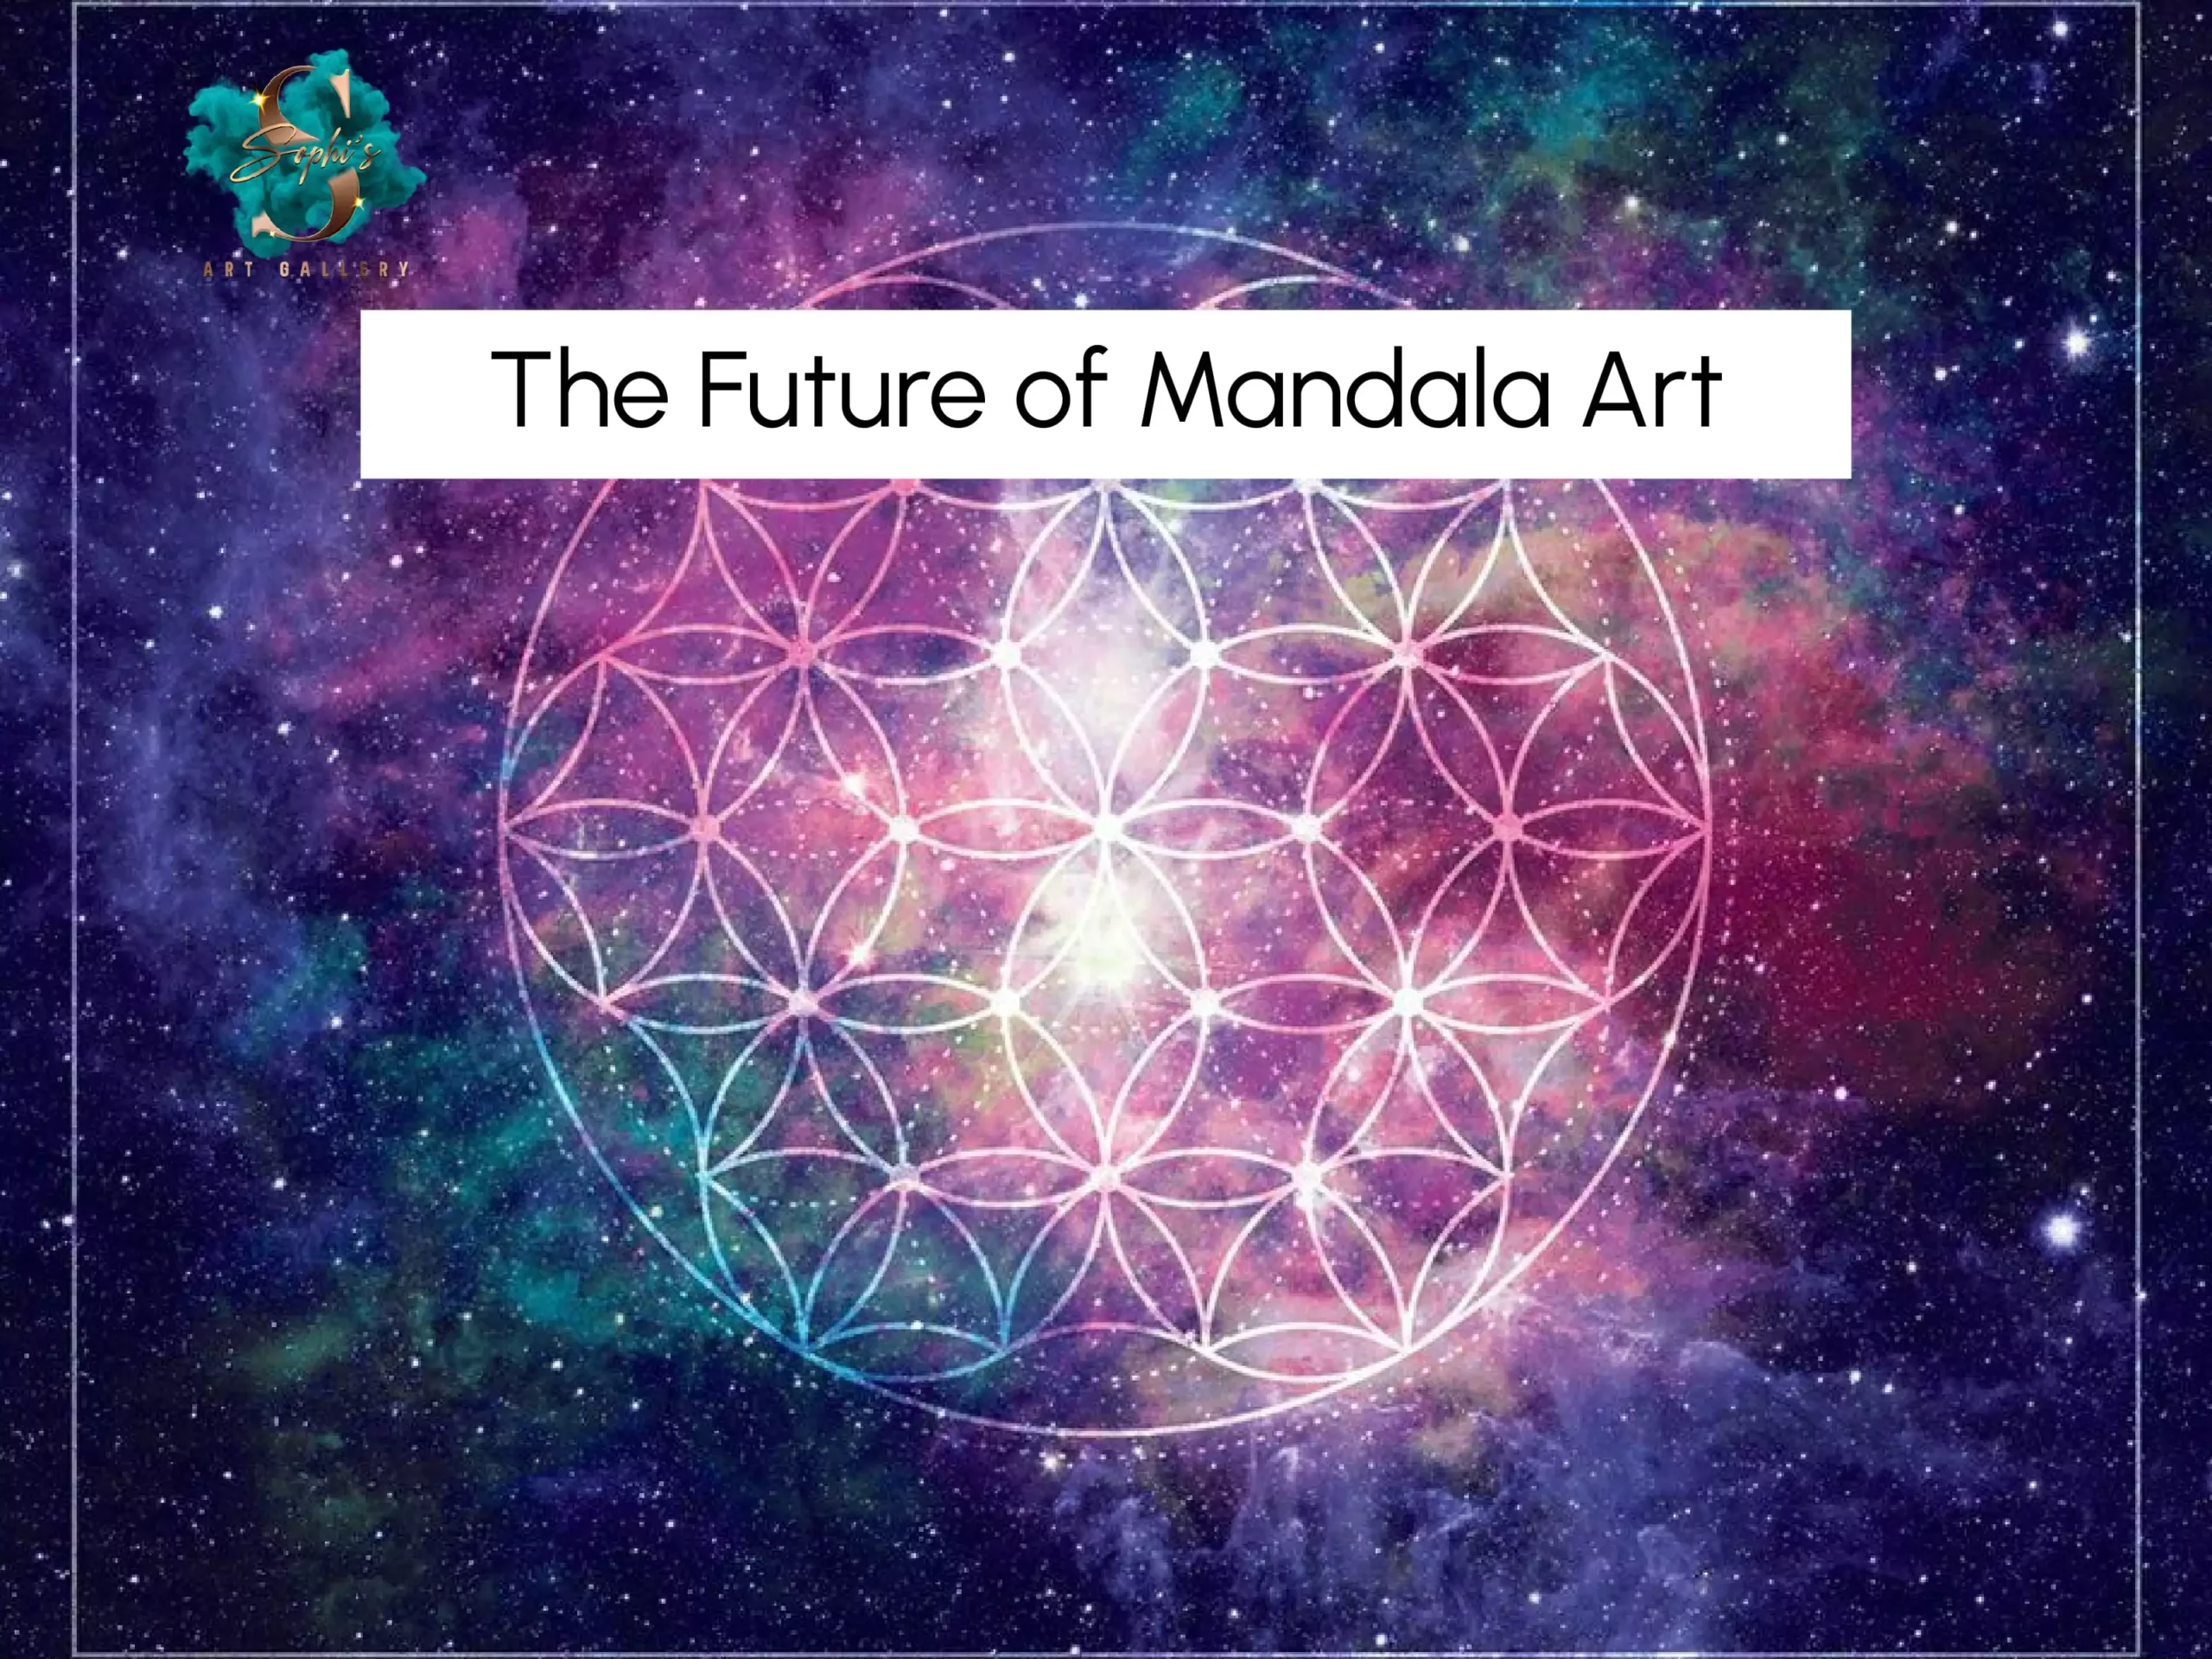 The Future of Mandala Art